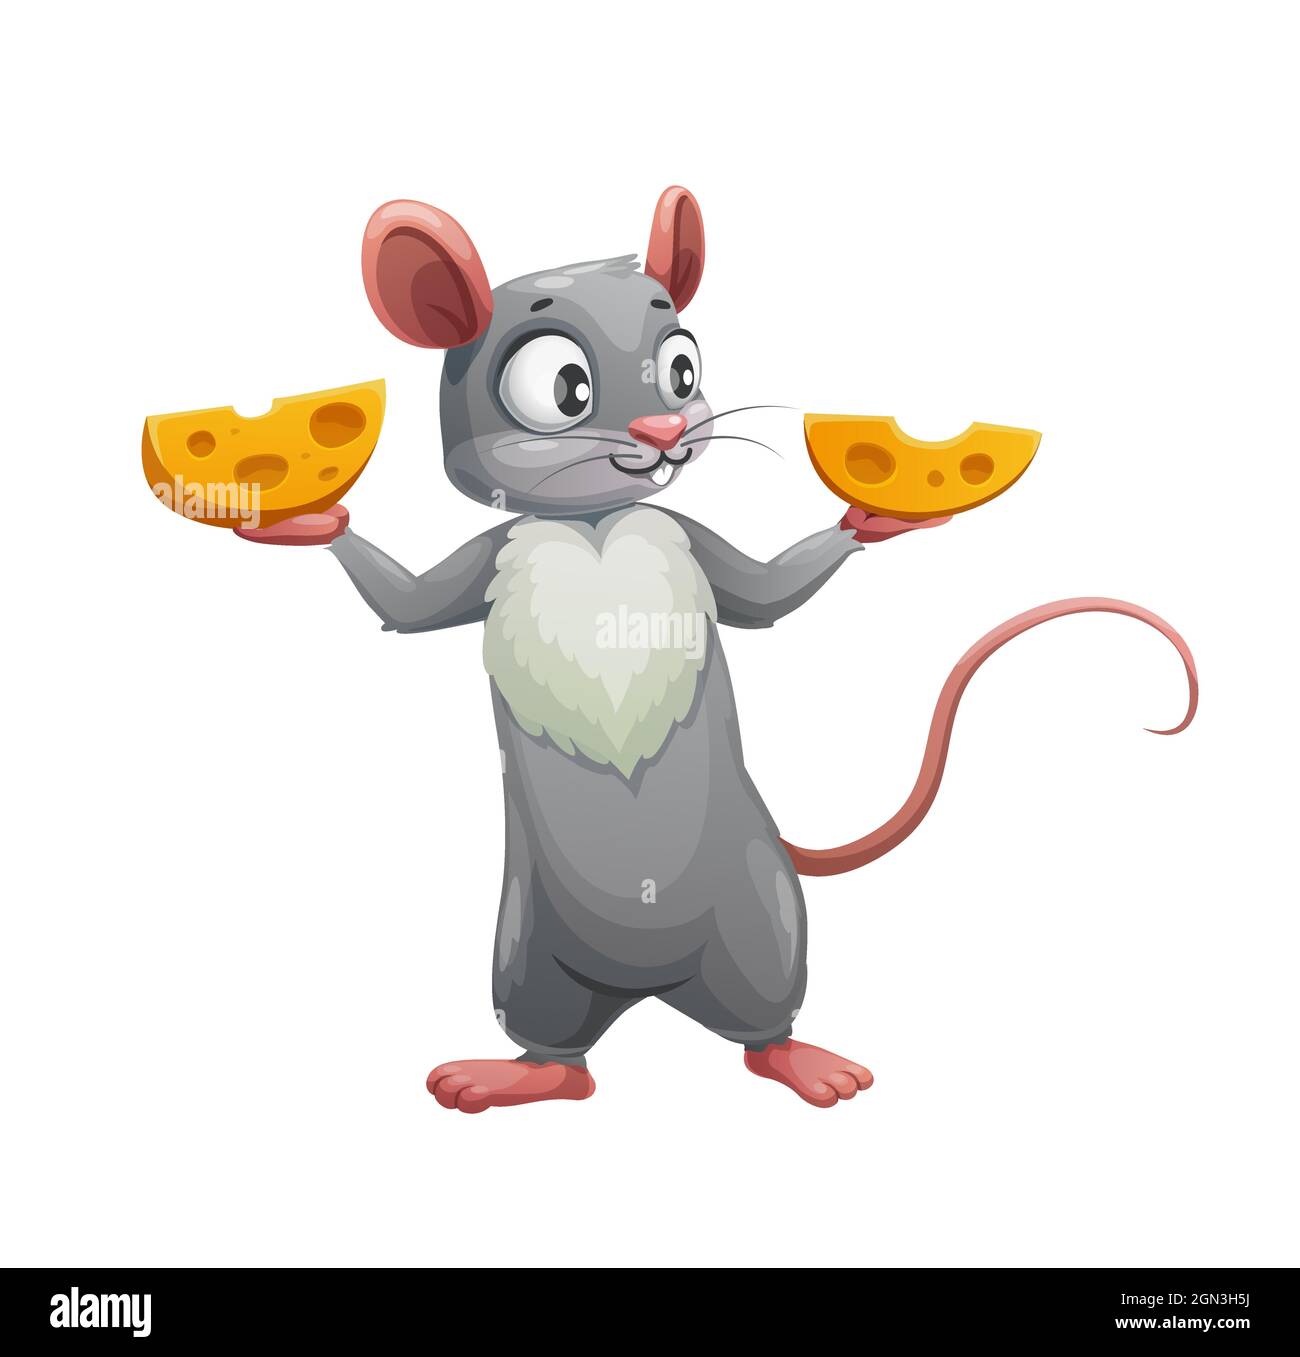 Ratón de dibujos animados y dos mitades de queso. Vector lindo rata o ratón,  hambriento personaje animal roedores sosteniendo cuñas de queso suizo, pequeño  ratón gris con orejas rosadas, cola y pecho